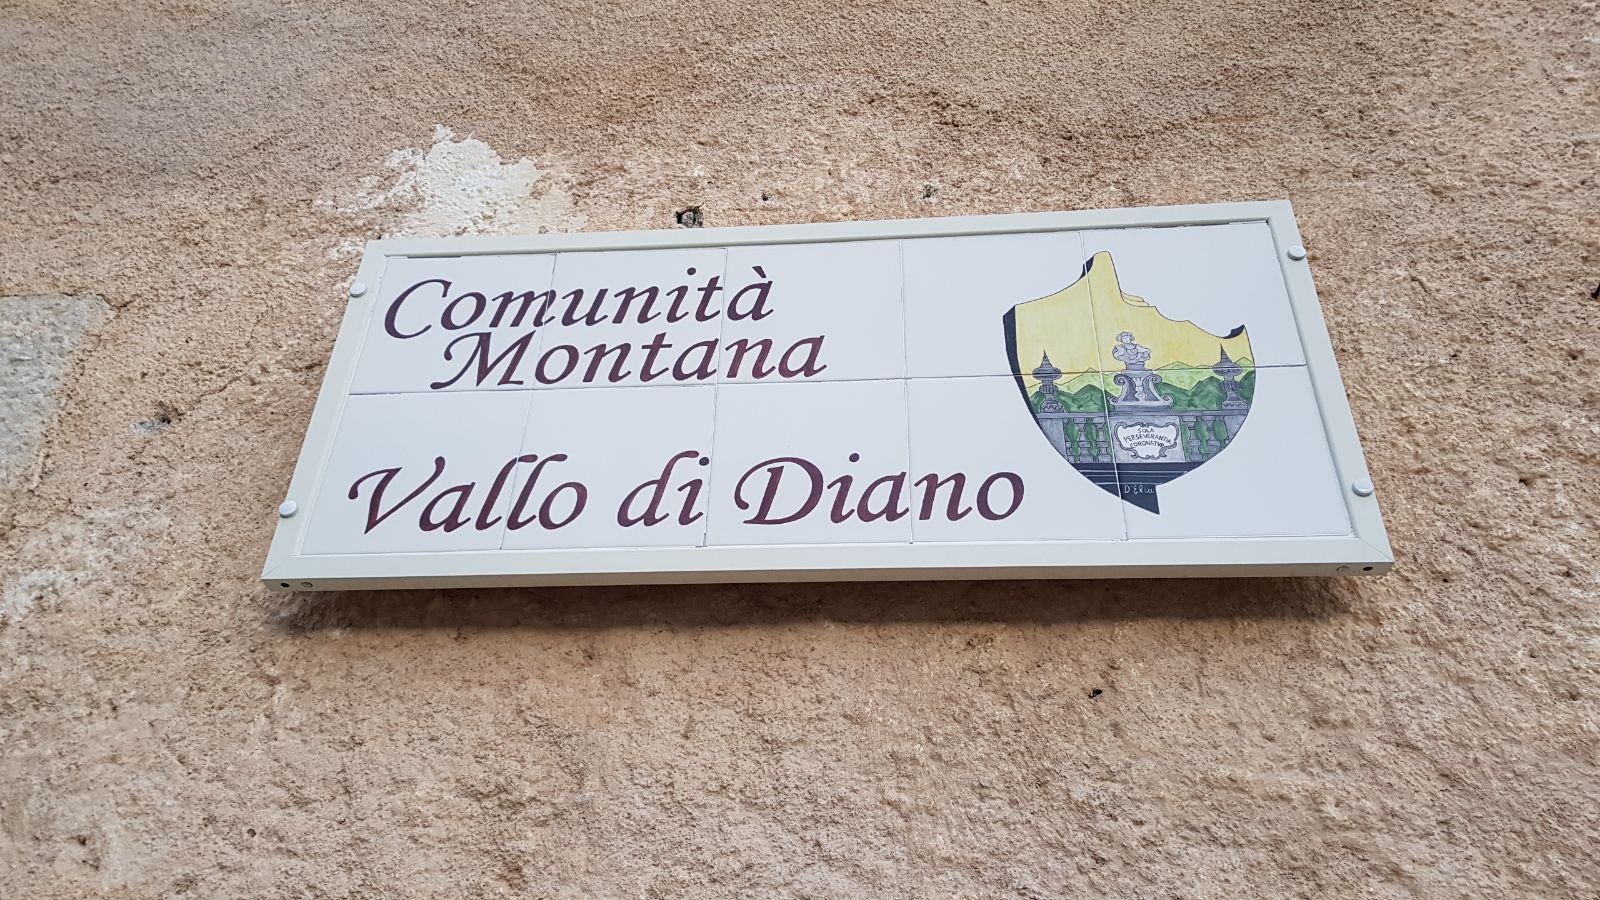 Comunità montana Vallo di Diano: 3 borse di studio per laureati per il master de “La Sapienza”